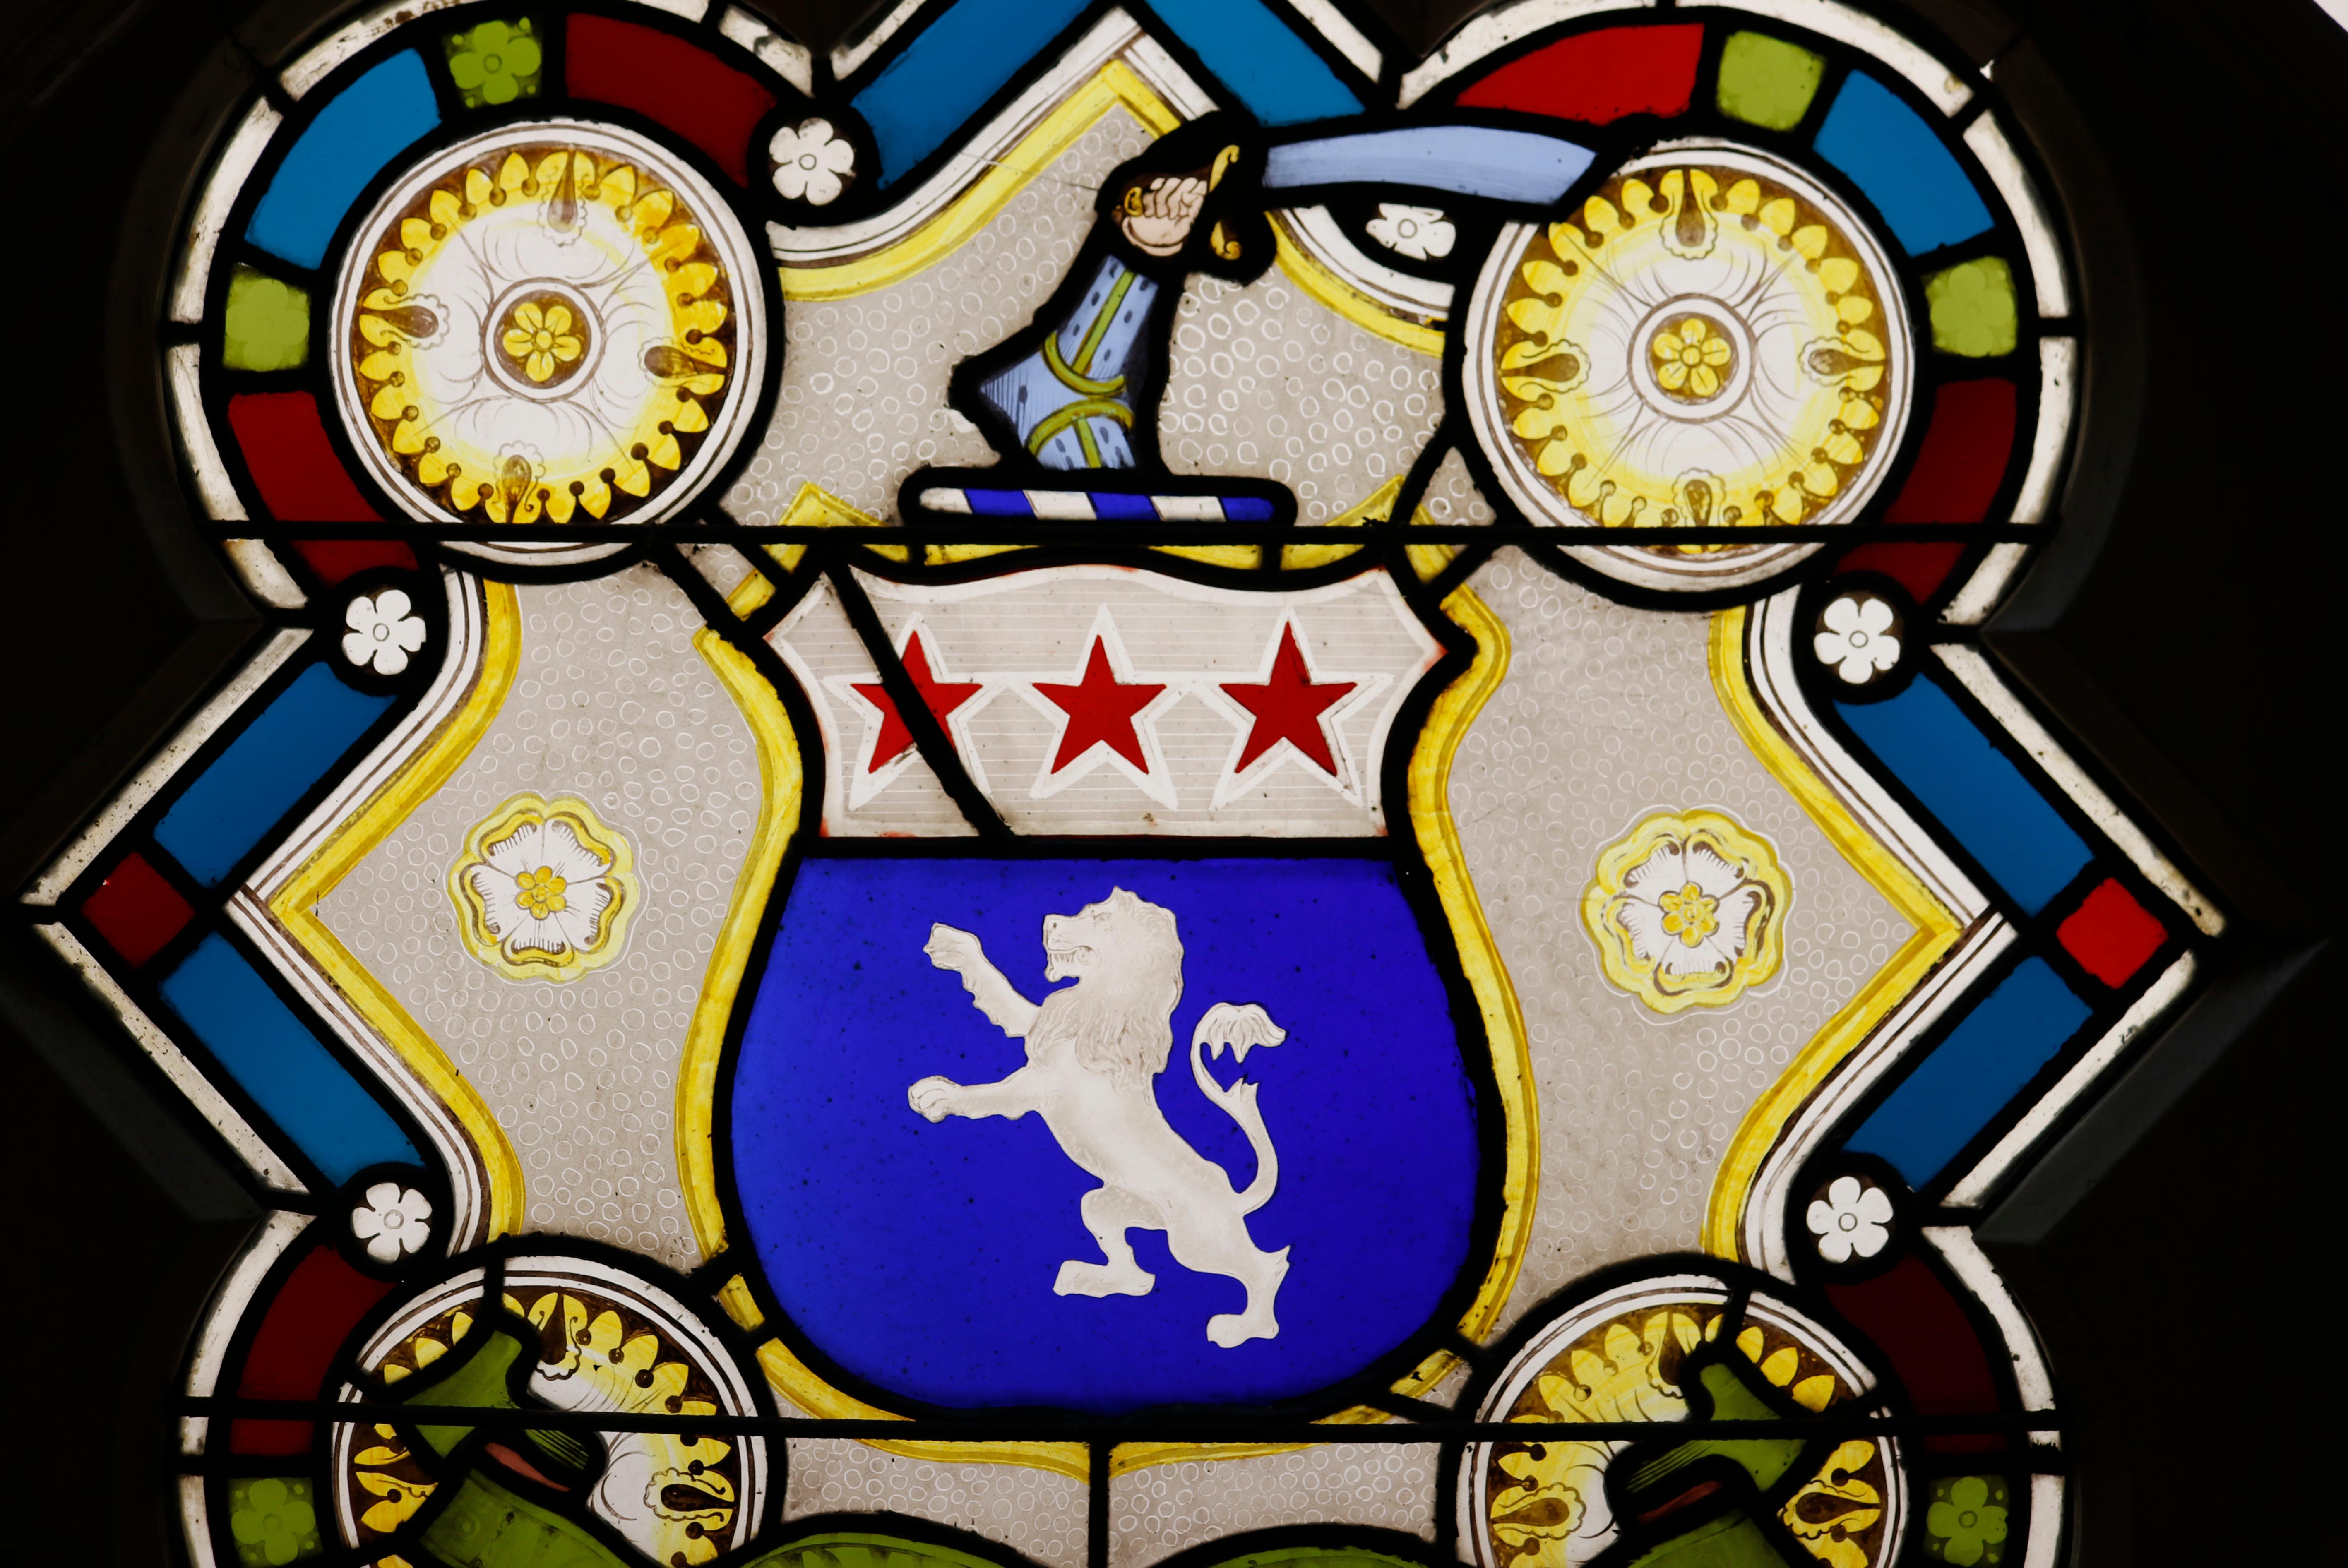 araujo coat of arms